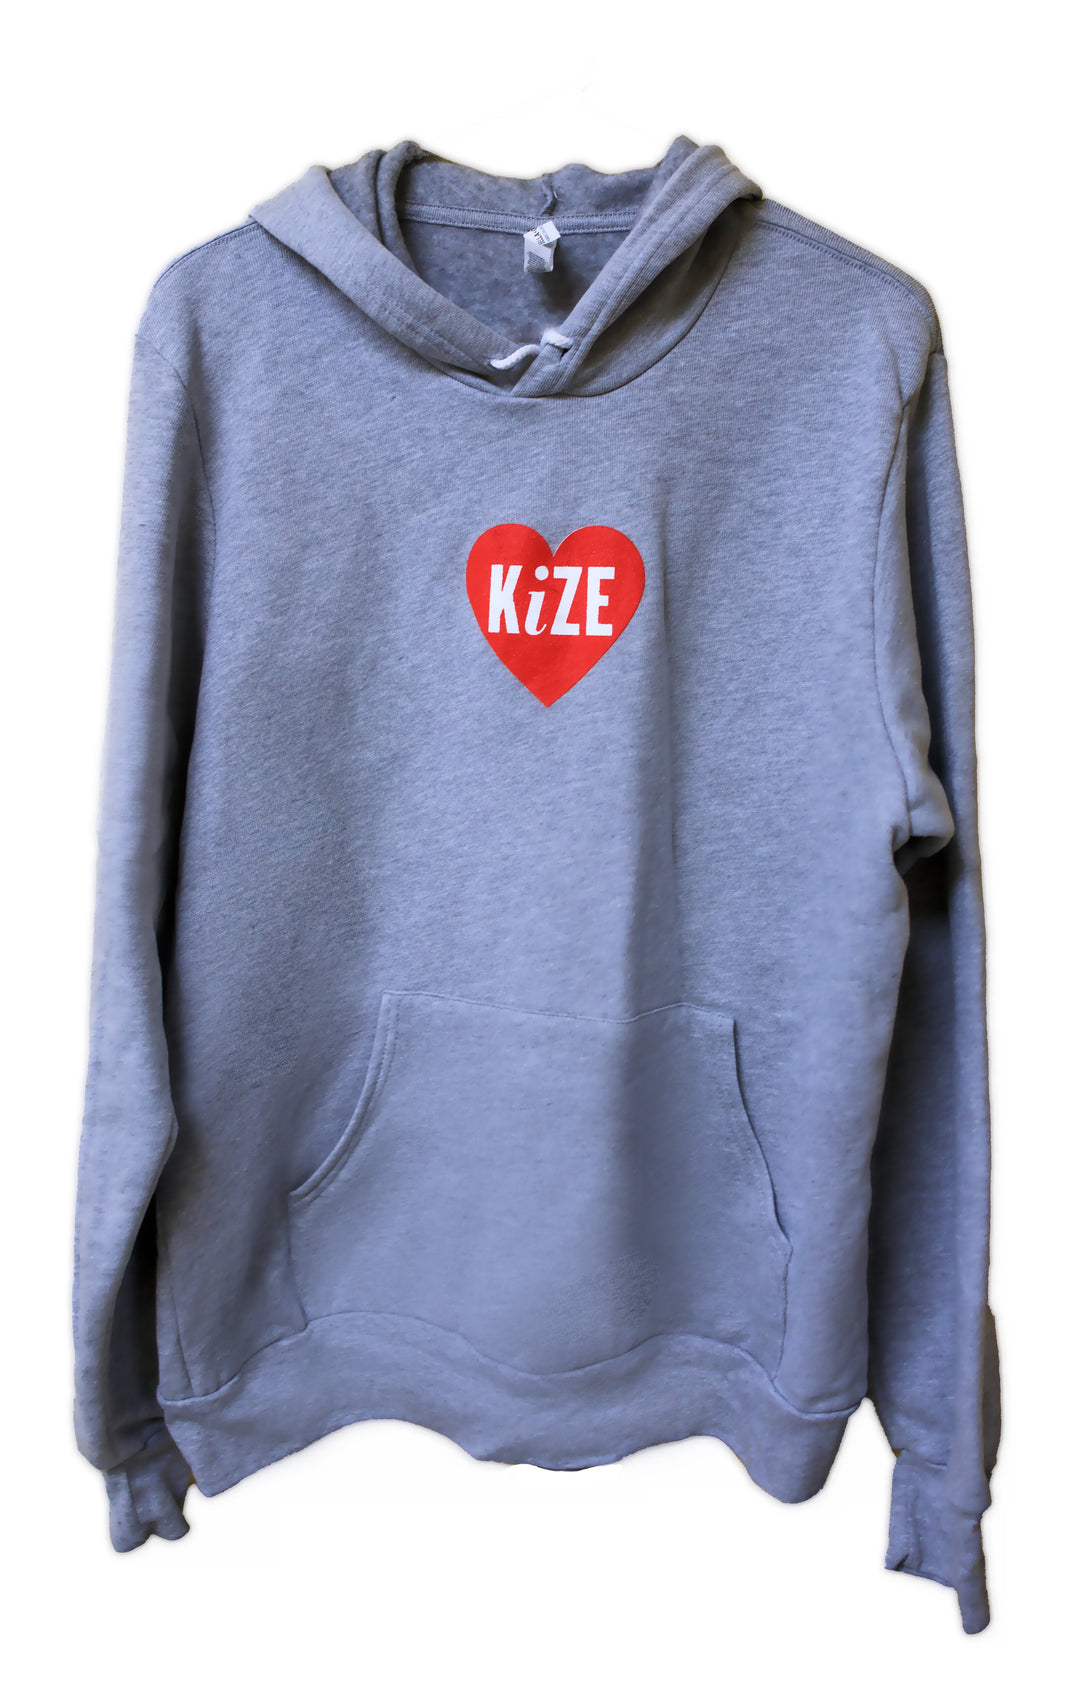 KiZE Gear